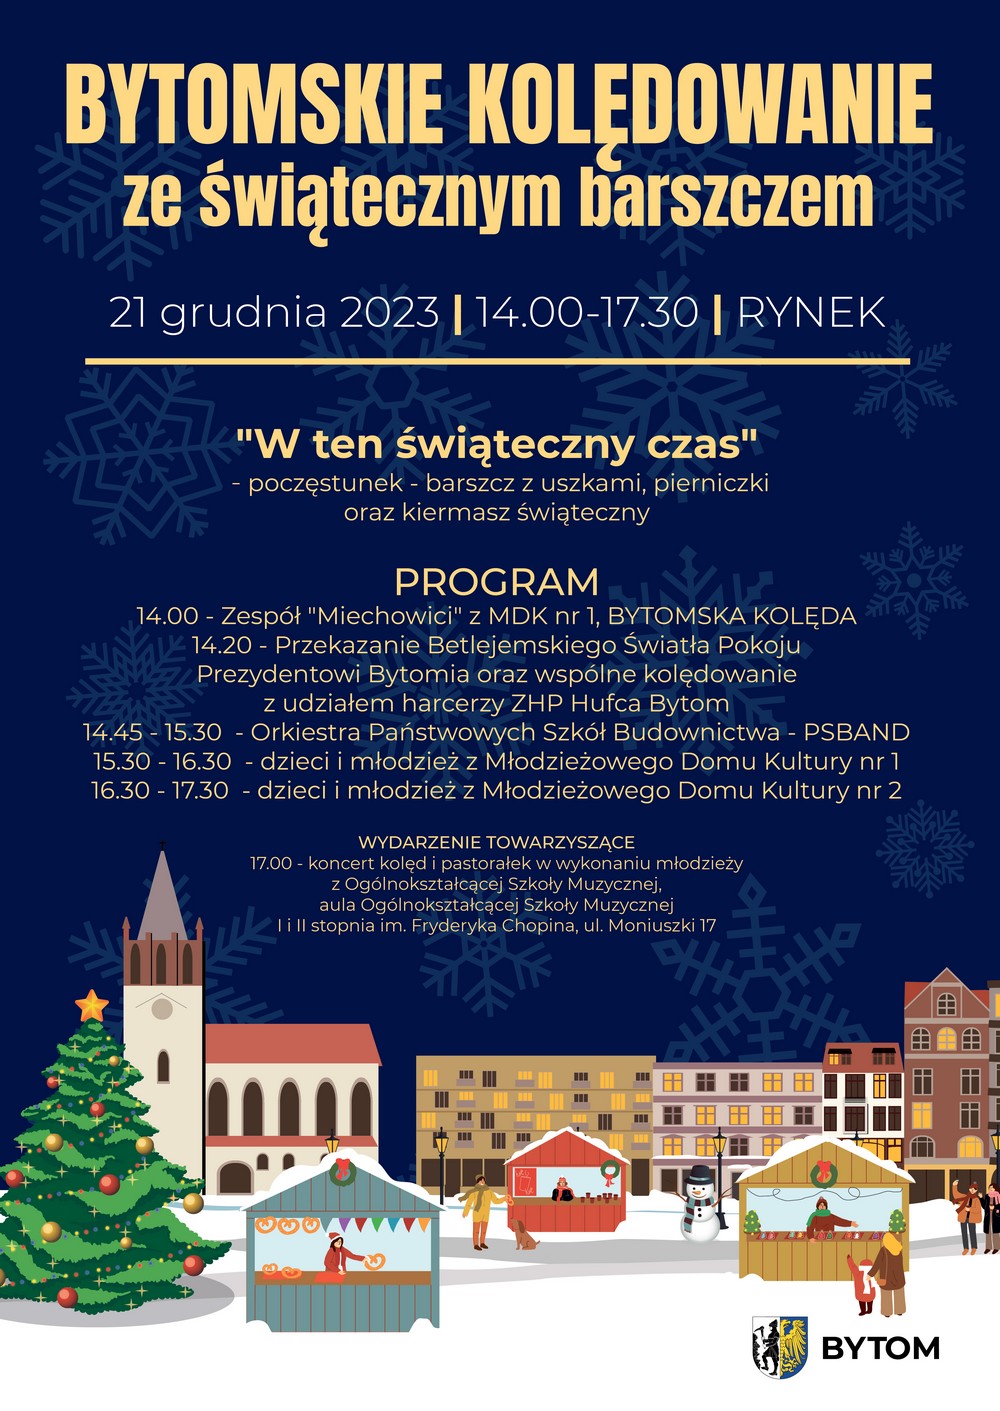 Plakat promujący Bytomskie kolędowanie ze świątecznym barszczem